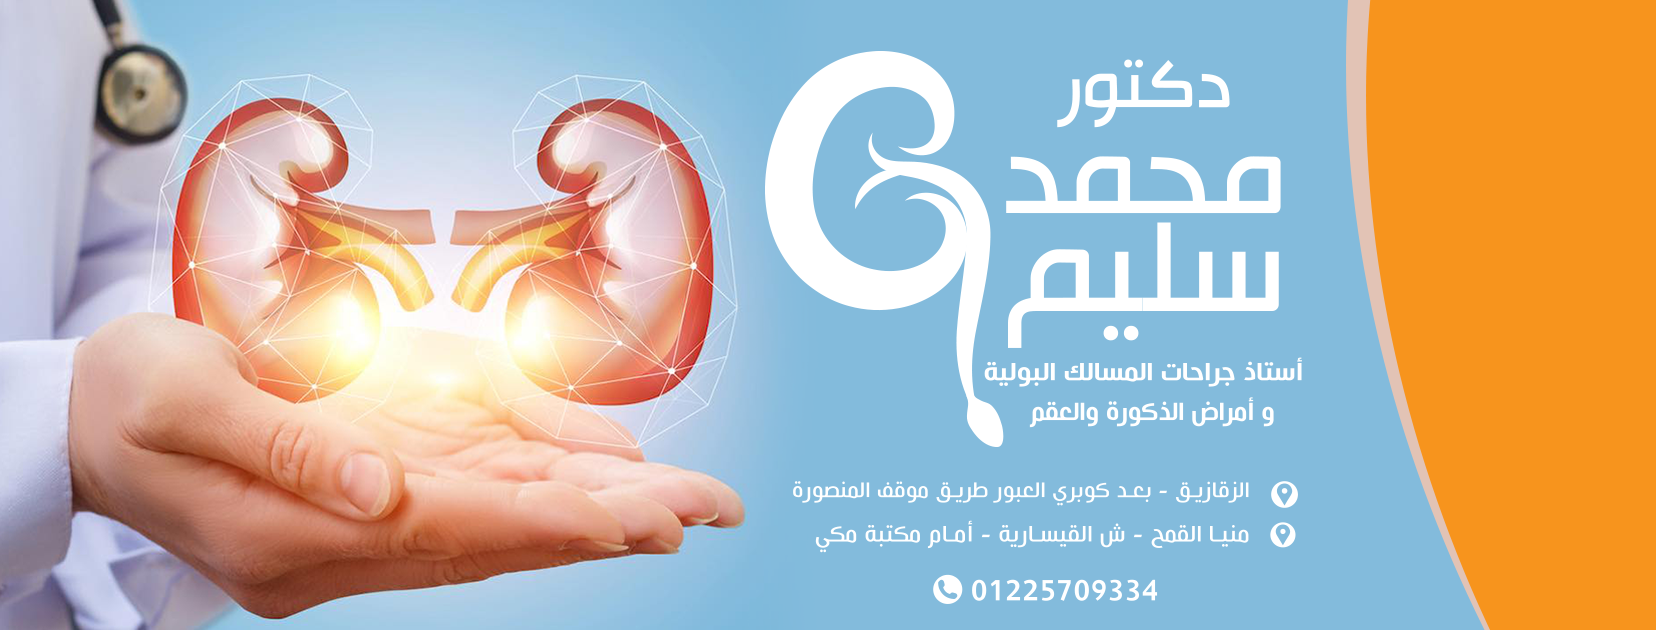 غلاف دكتور محمد سليم استاذ جراحات المسالك البولية وامراض الذكورة والعقم